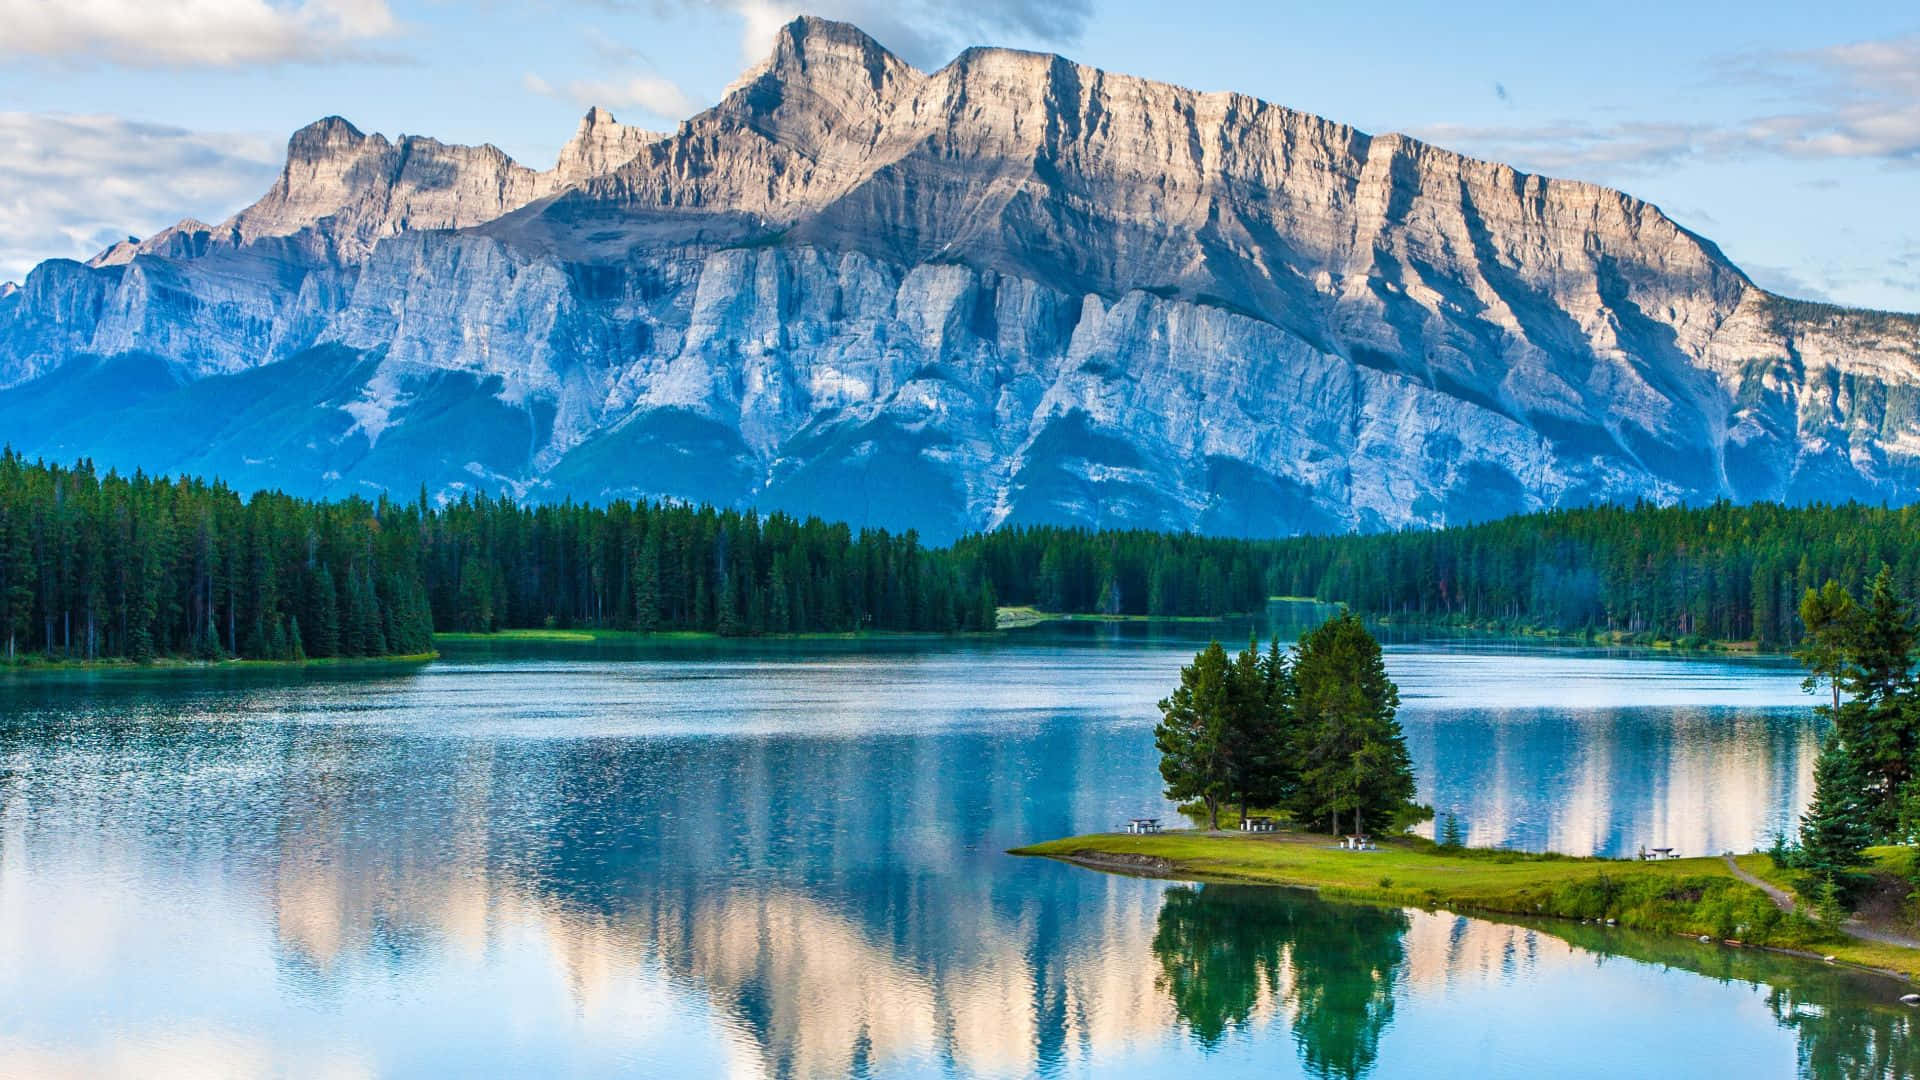 Banff National Park: Thưởng thức vẻ đẹp thiên nhiên tuyệt đẹp của Vườn quốc gia Banff, với những dãy núi hùng vĩ và những bức tranh tuyệt đẹp về hồ nước trong xanh. Hãy xem những hình ảnh tuyệt đẹp của thảo nguyên và những con đường mòn hoang sơ để có được kỳ nghỉ tuyệt vời nhất.